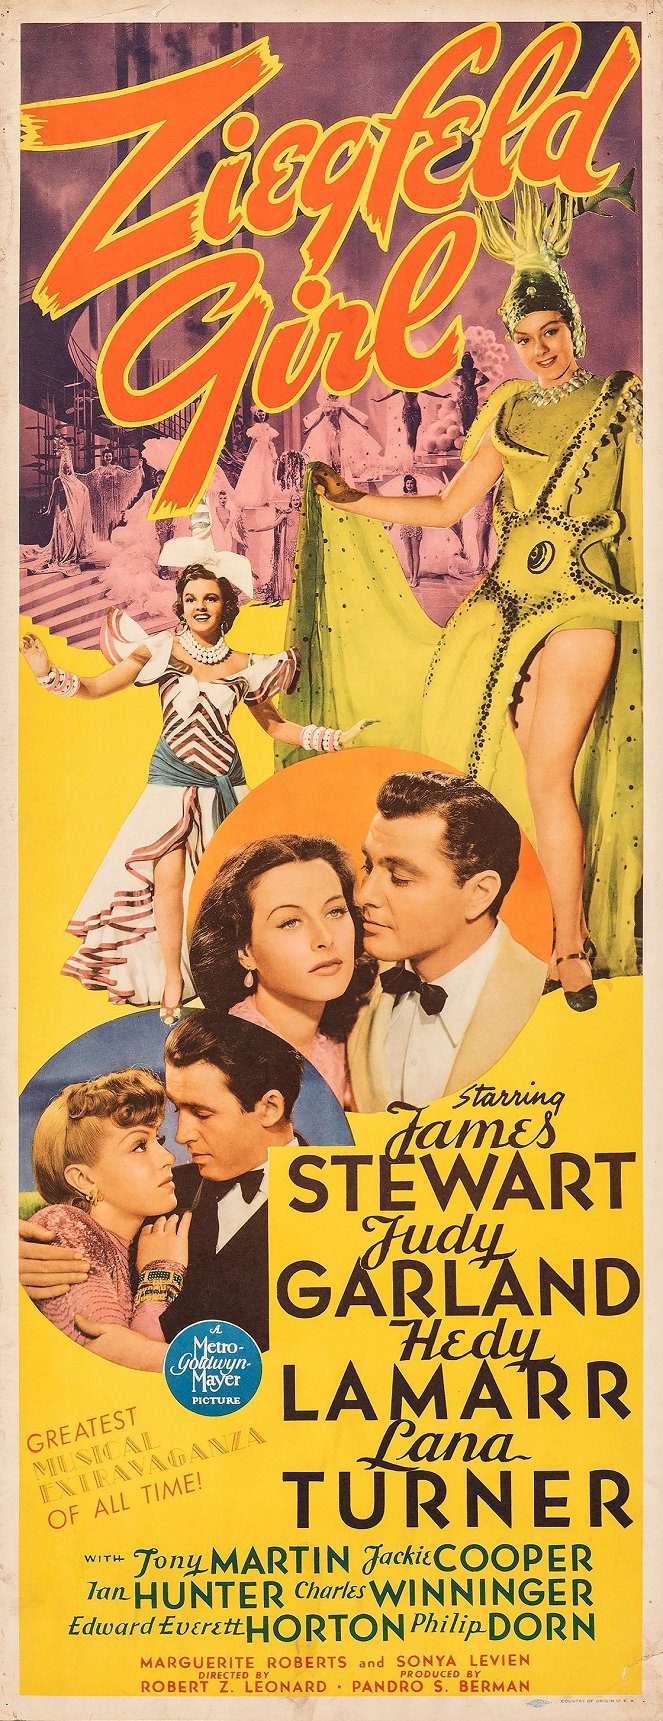 Ziegfeld Girl - Posters